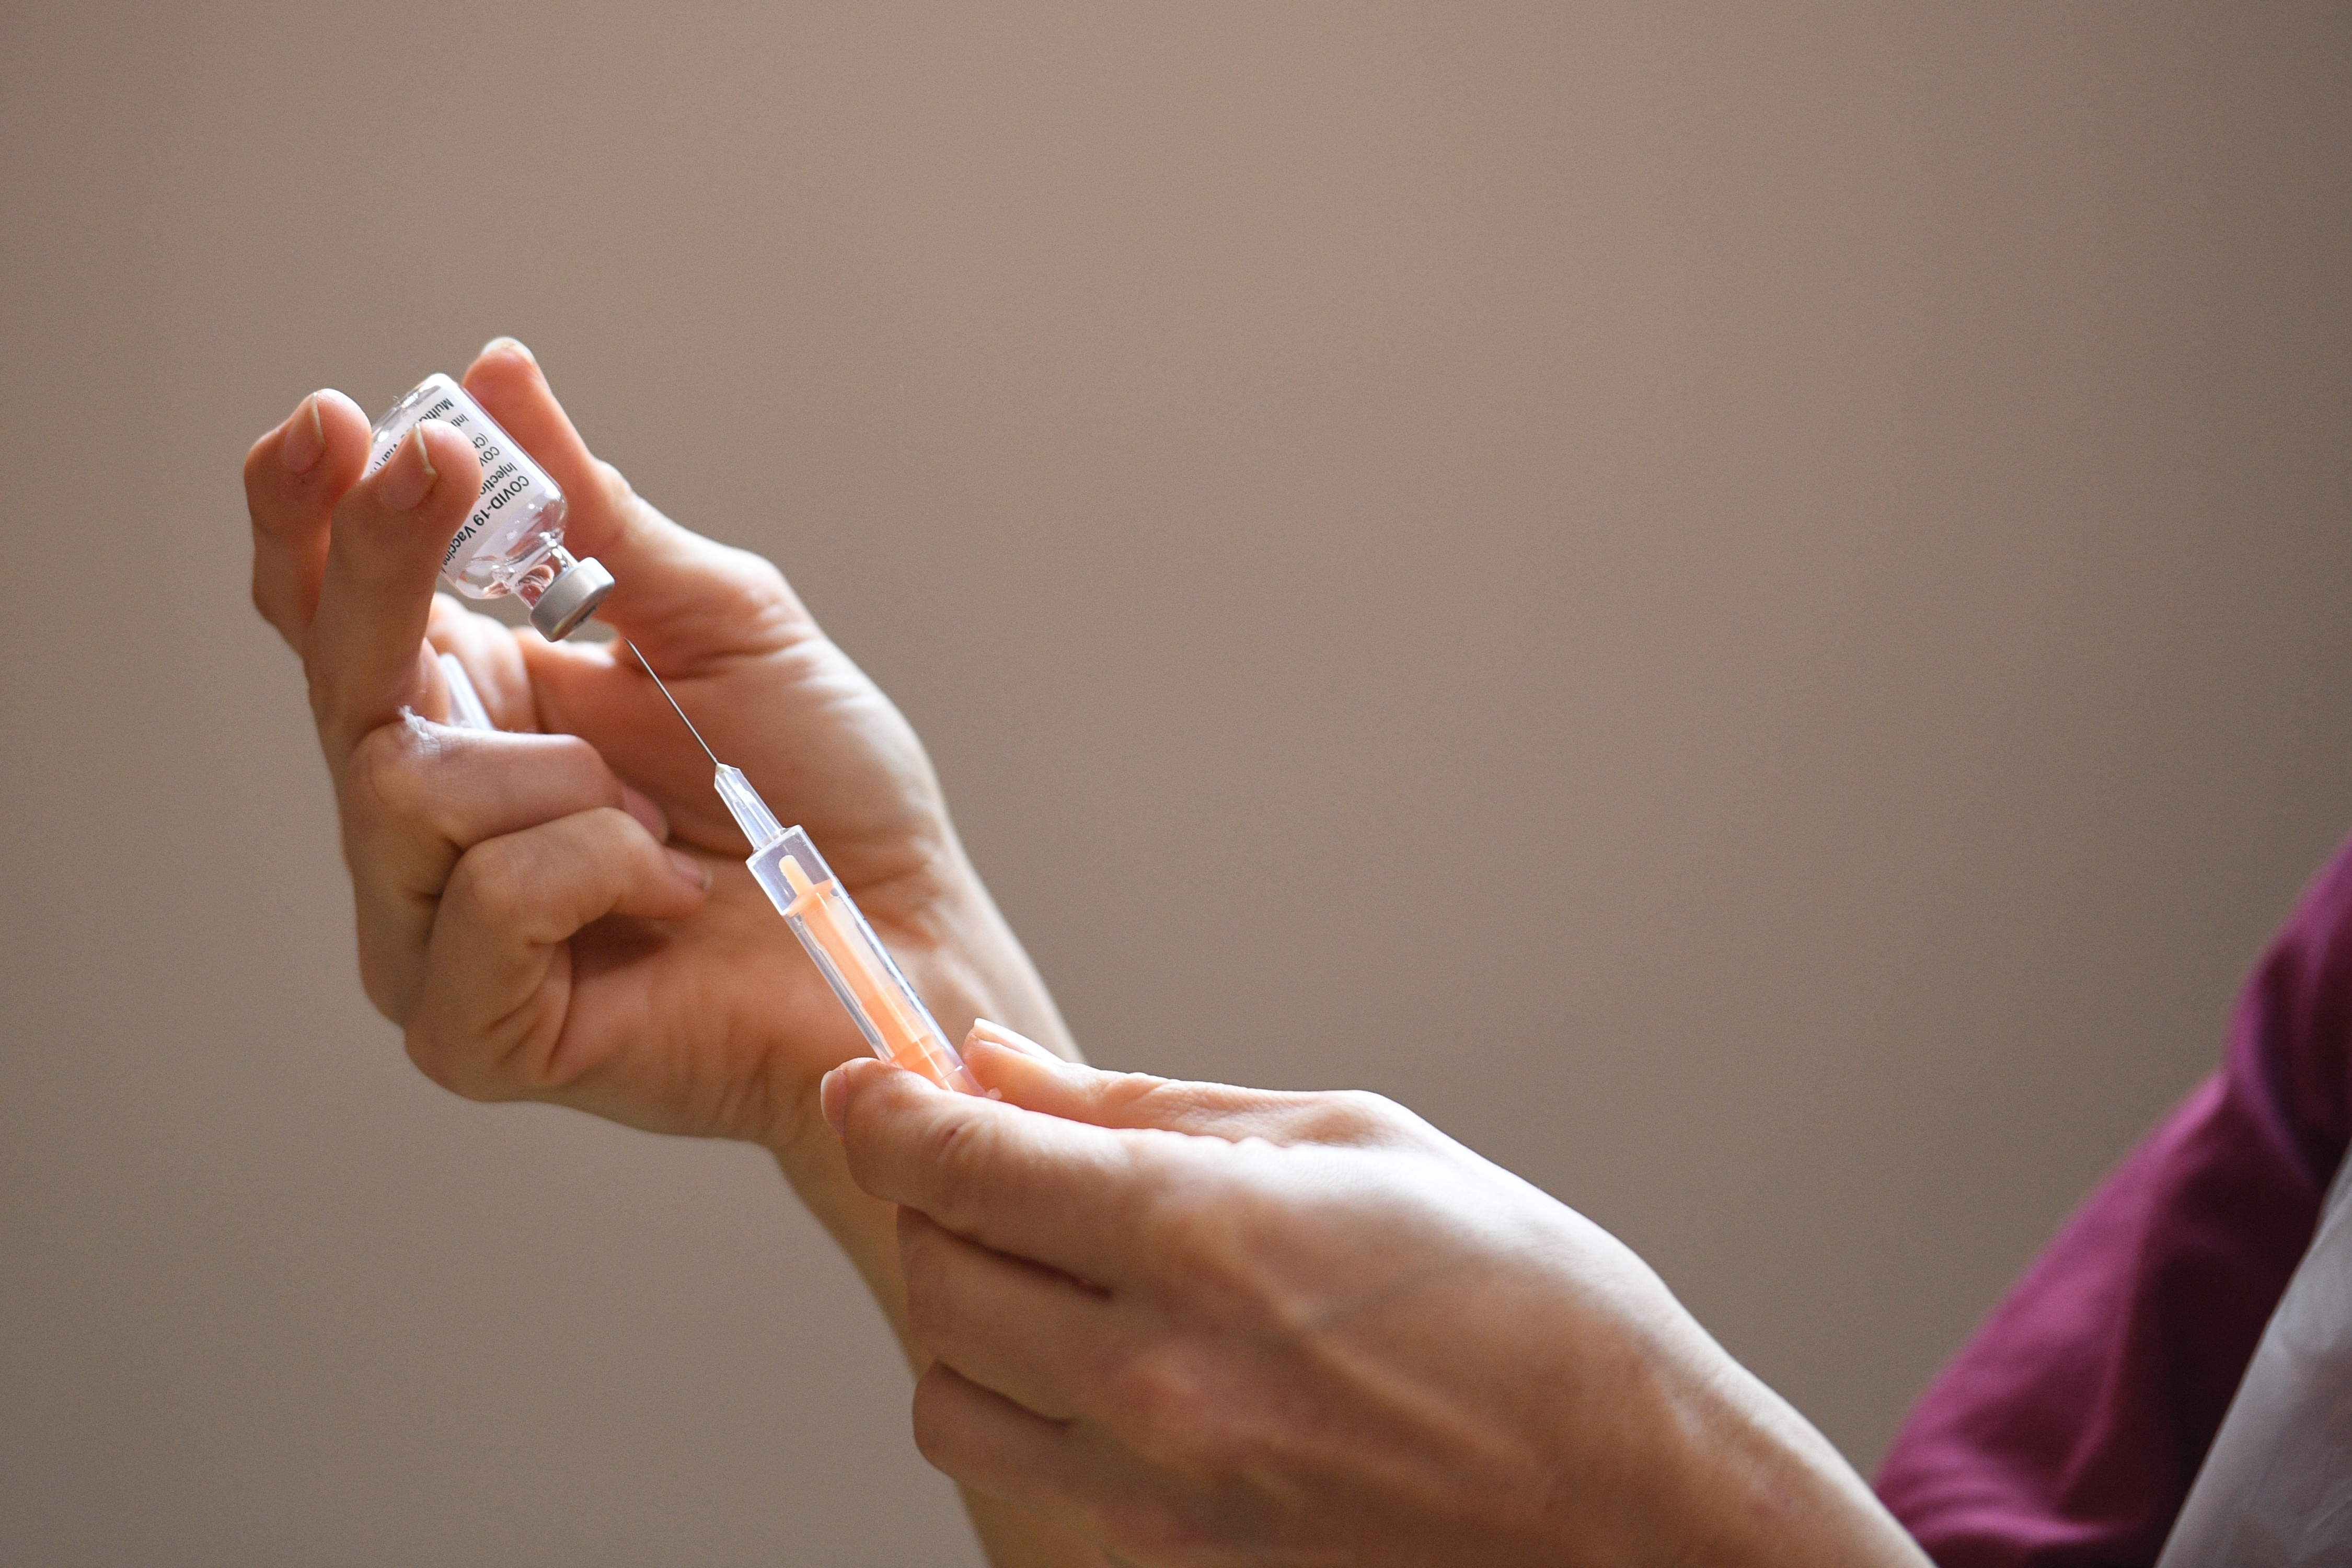 La France attend moins de doses de vaccin d'AstraZeneca en février, avant un rattrapage en mars, a indiqué mardi le ministère de la Santé.